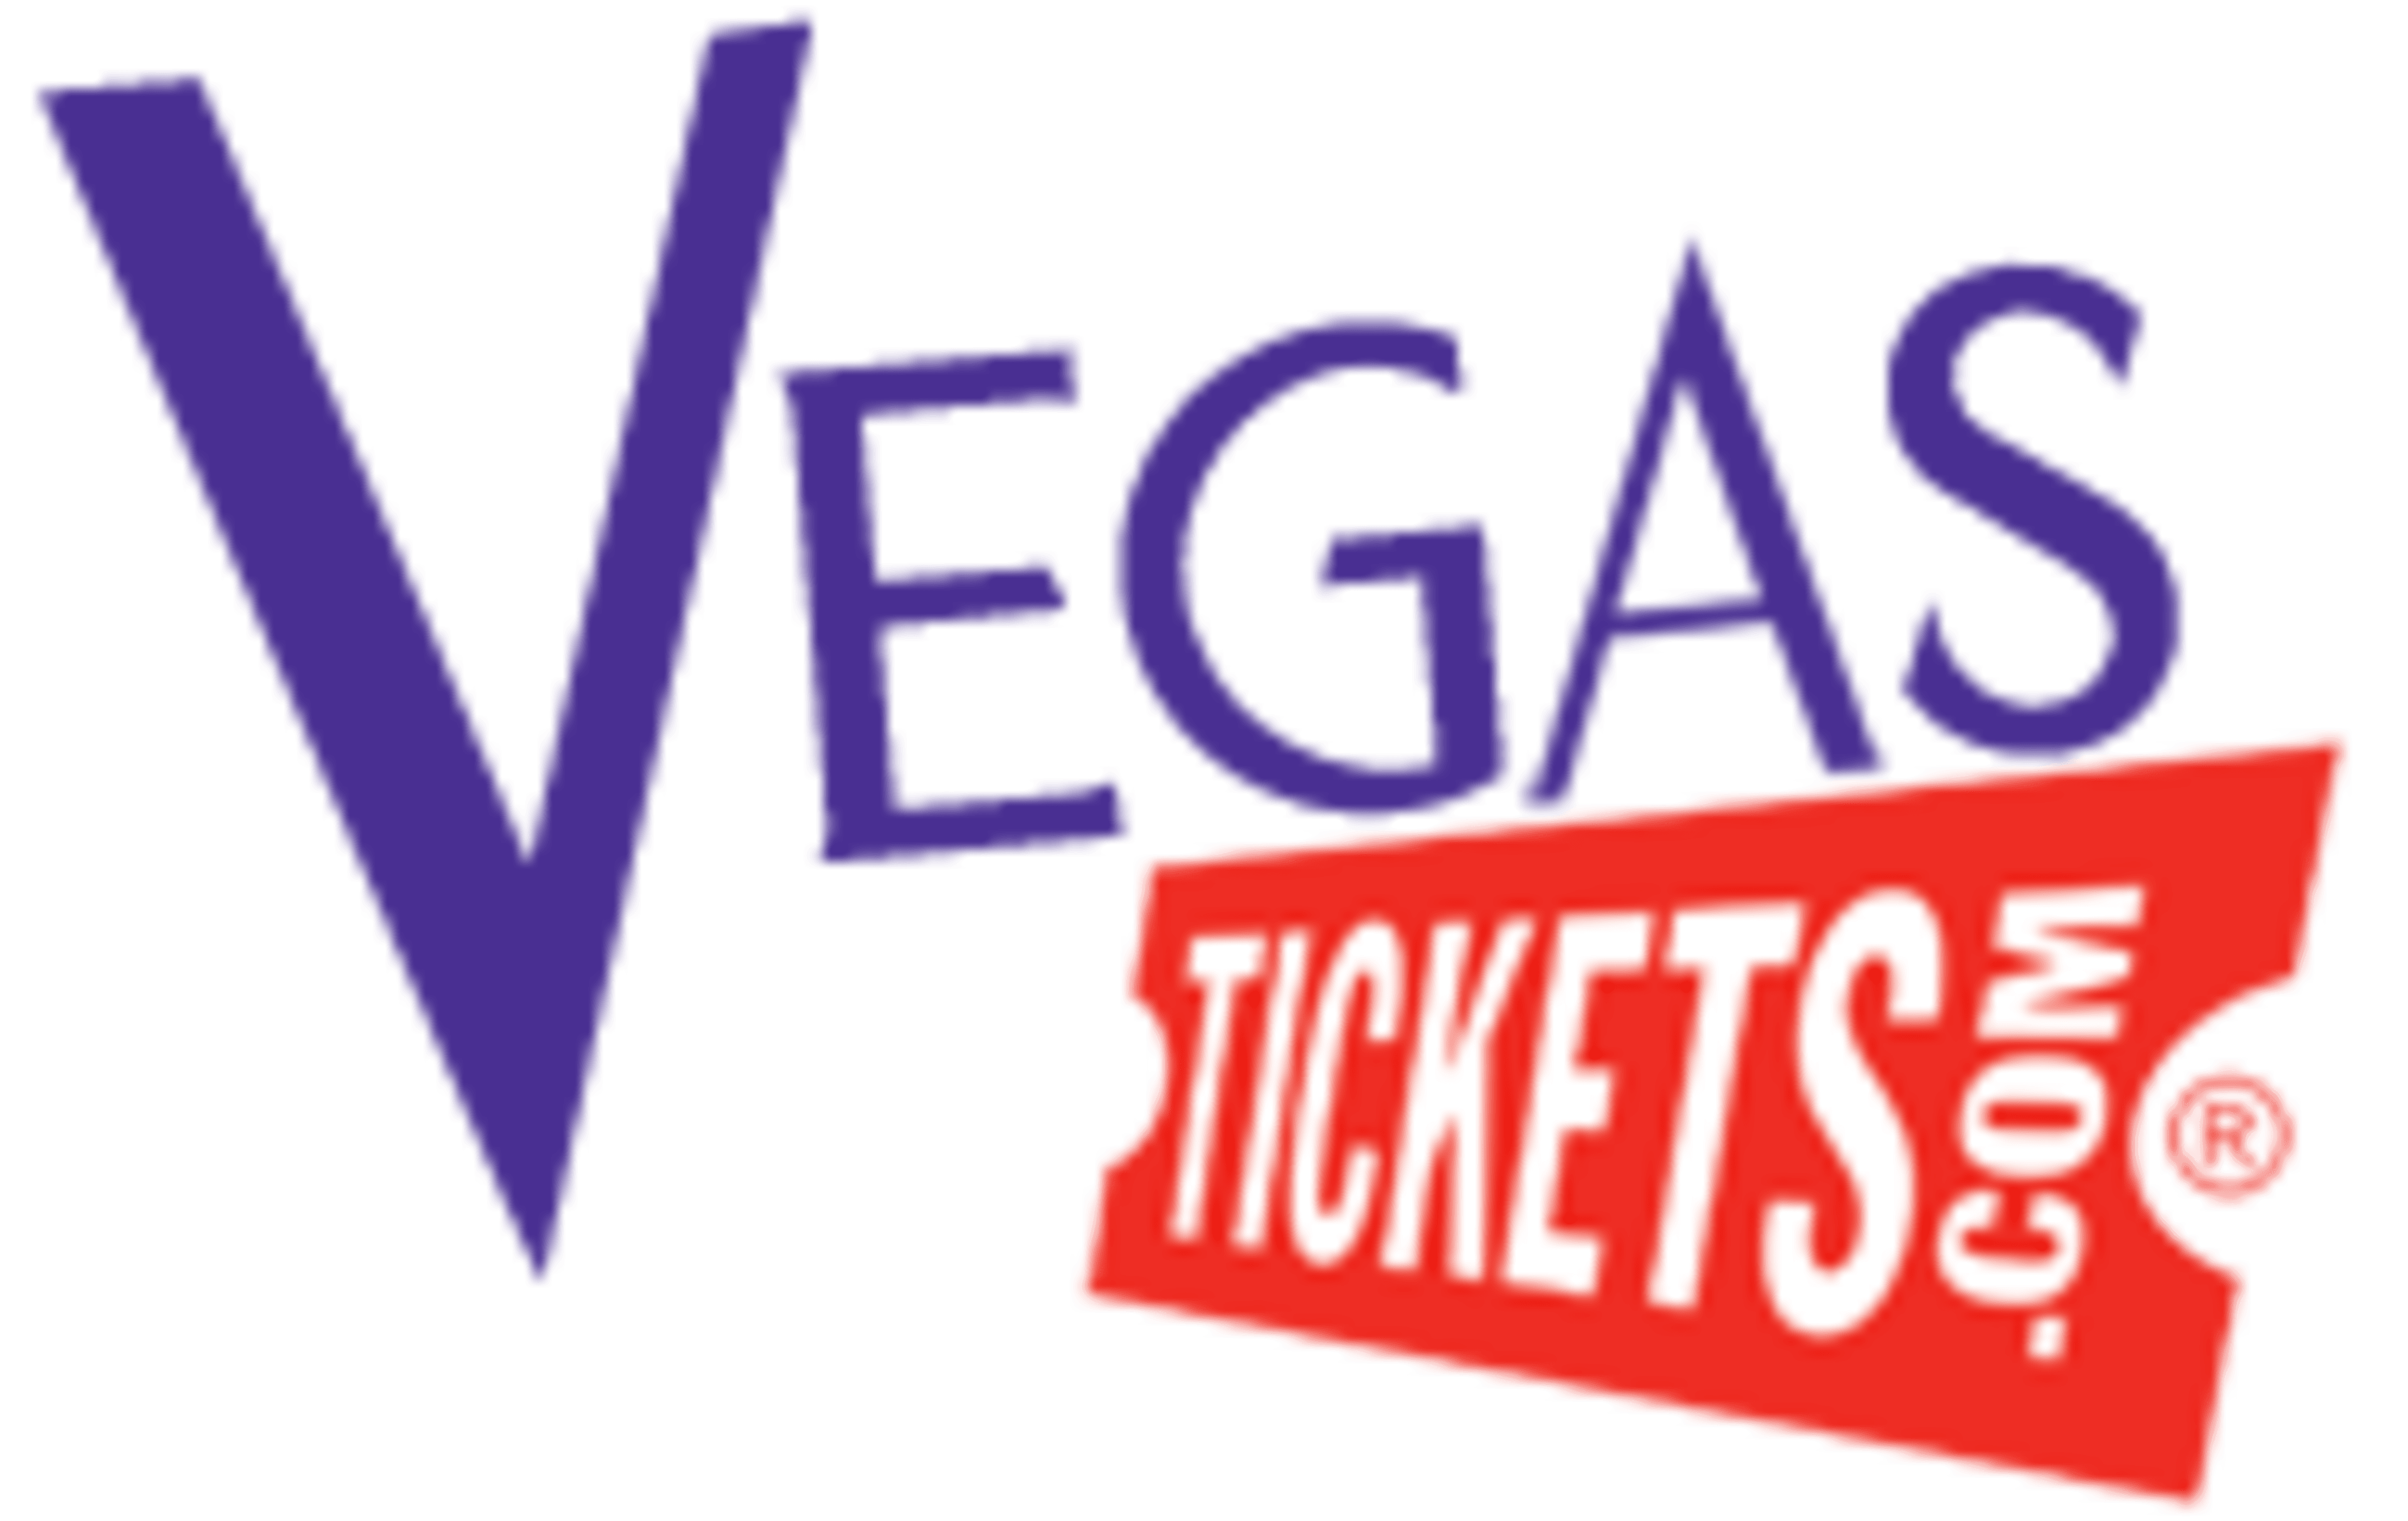 Vegas TicketsCode